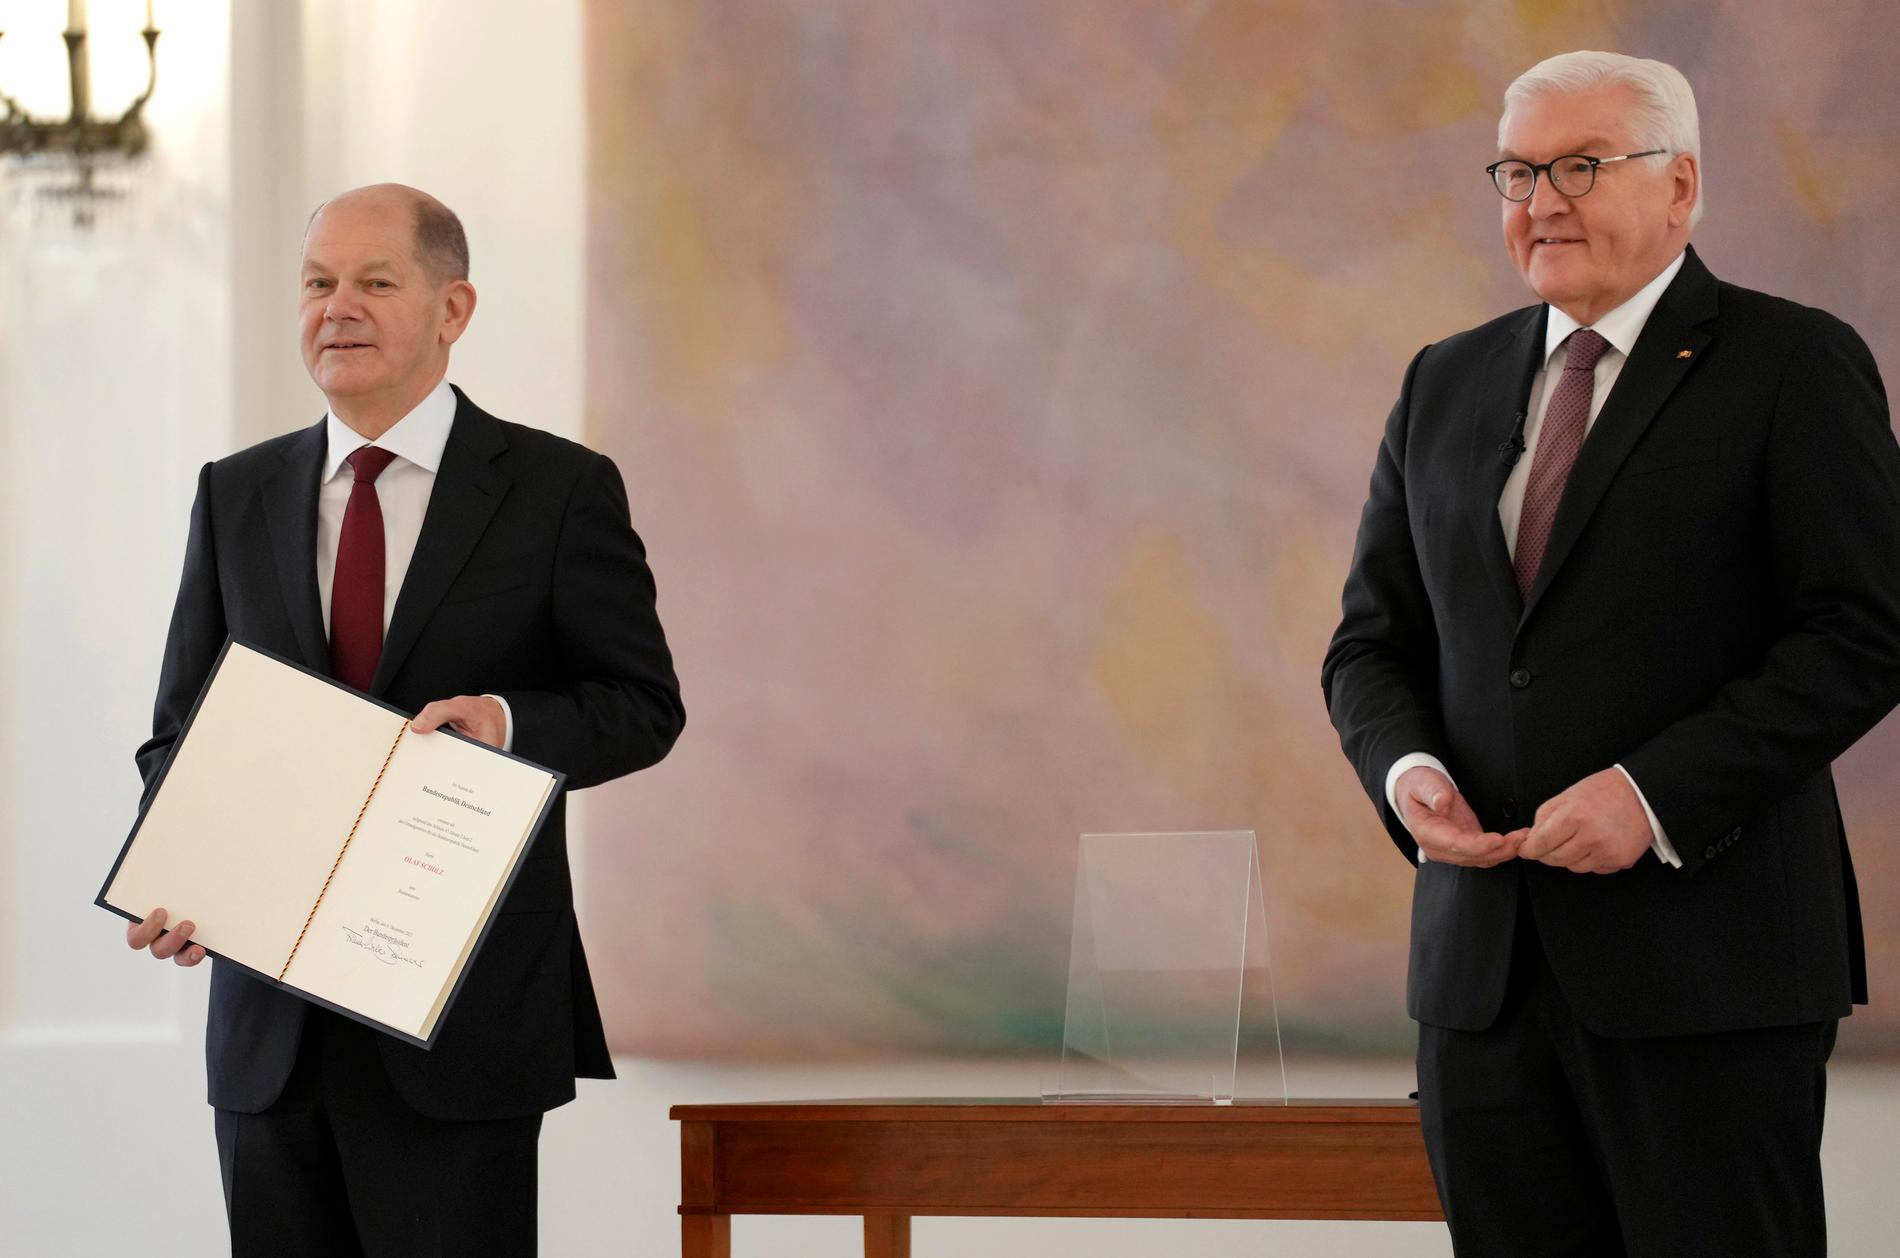 Olaf Scholz tillsammans med förbundspresident Frank-Walter Steinmeier, efter överräckandet av utnämningsurkunden.